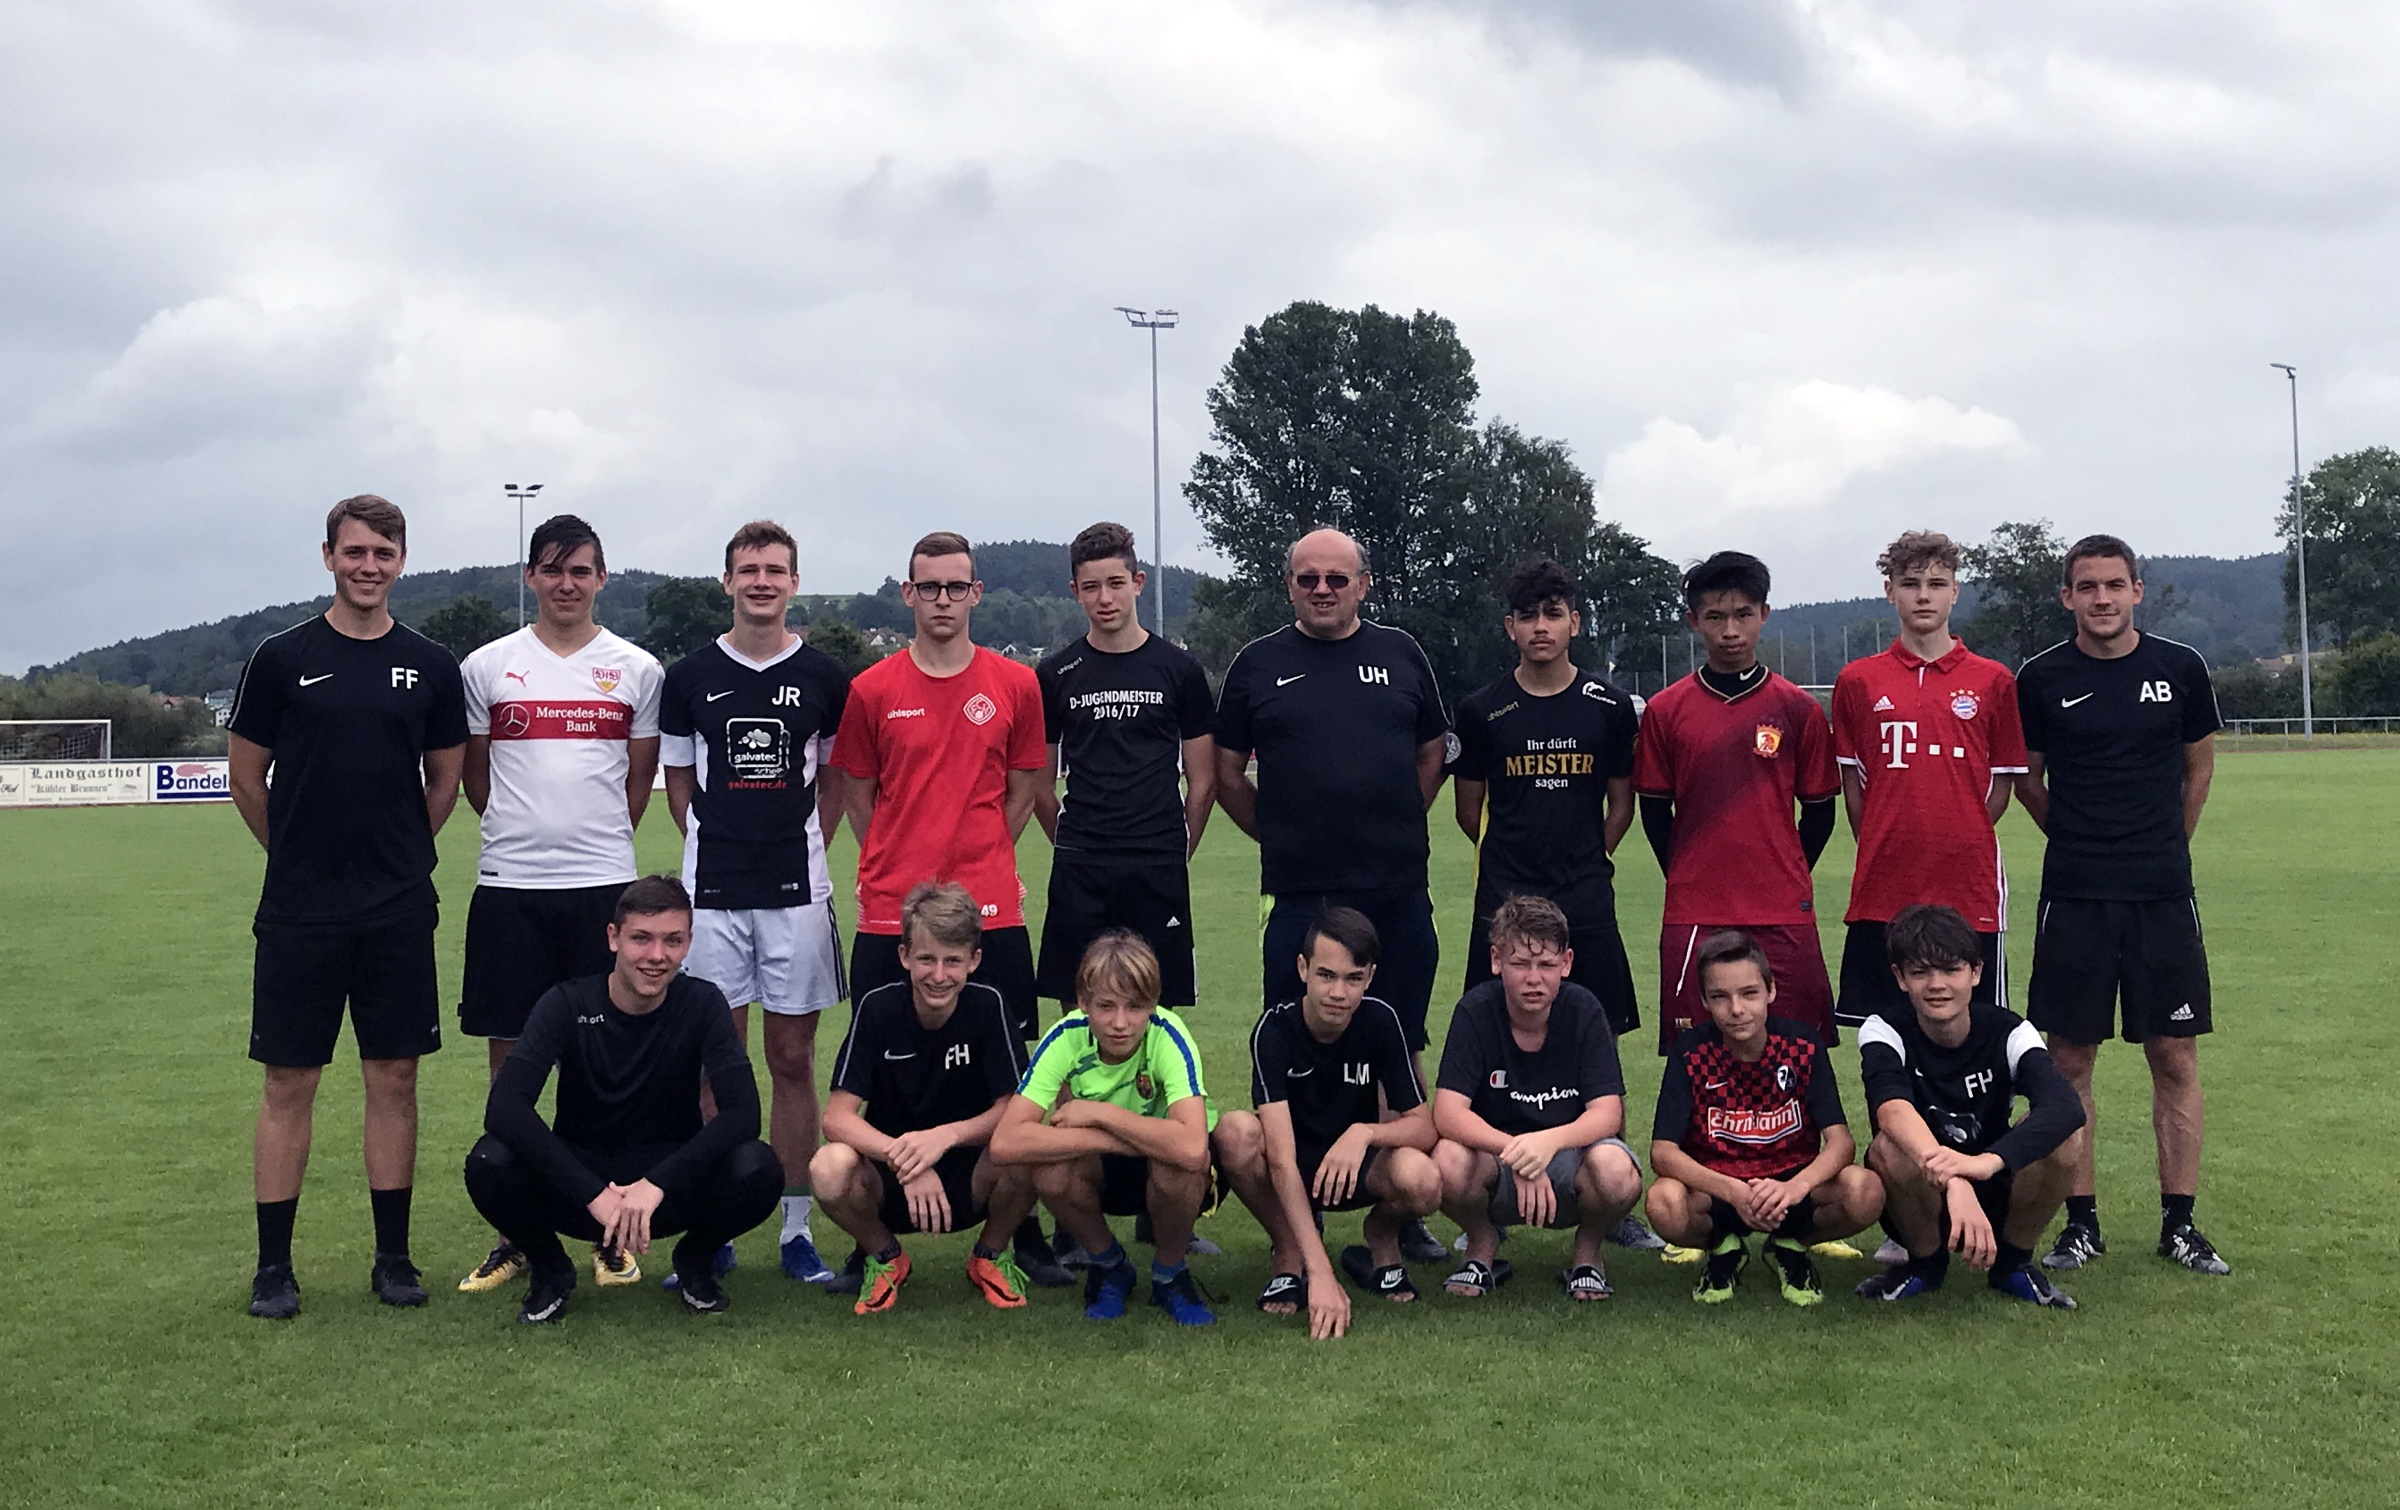 14 B-Jugendspieler der SGM Lauterbach / Hardt waren mit ihren Trainern 3 Tage im Trainingslager am Bodensee